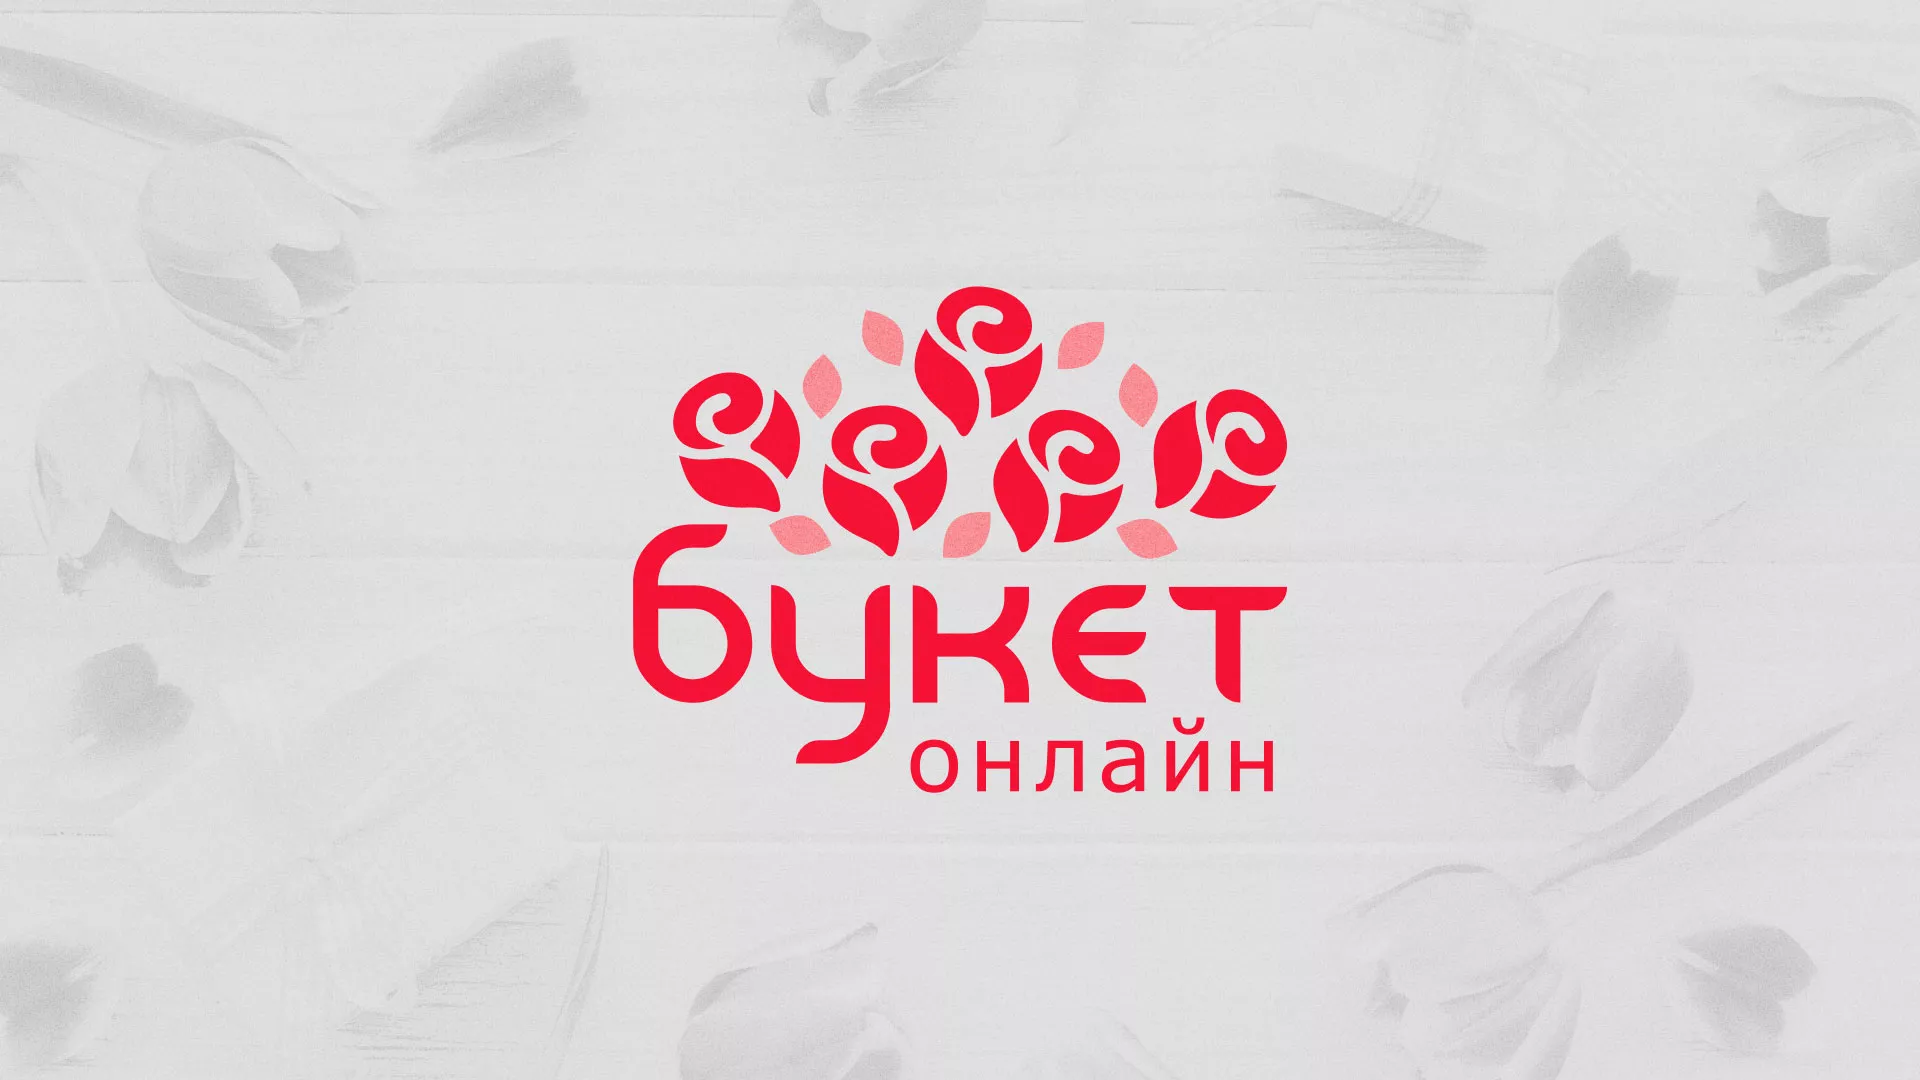 Создание интернет-магазина «Букет-онлайн» по цветам в Моршанске